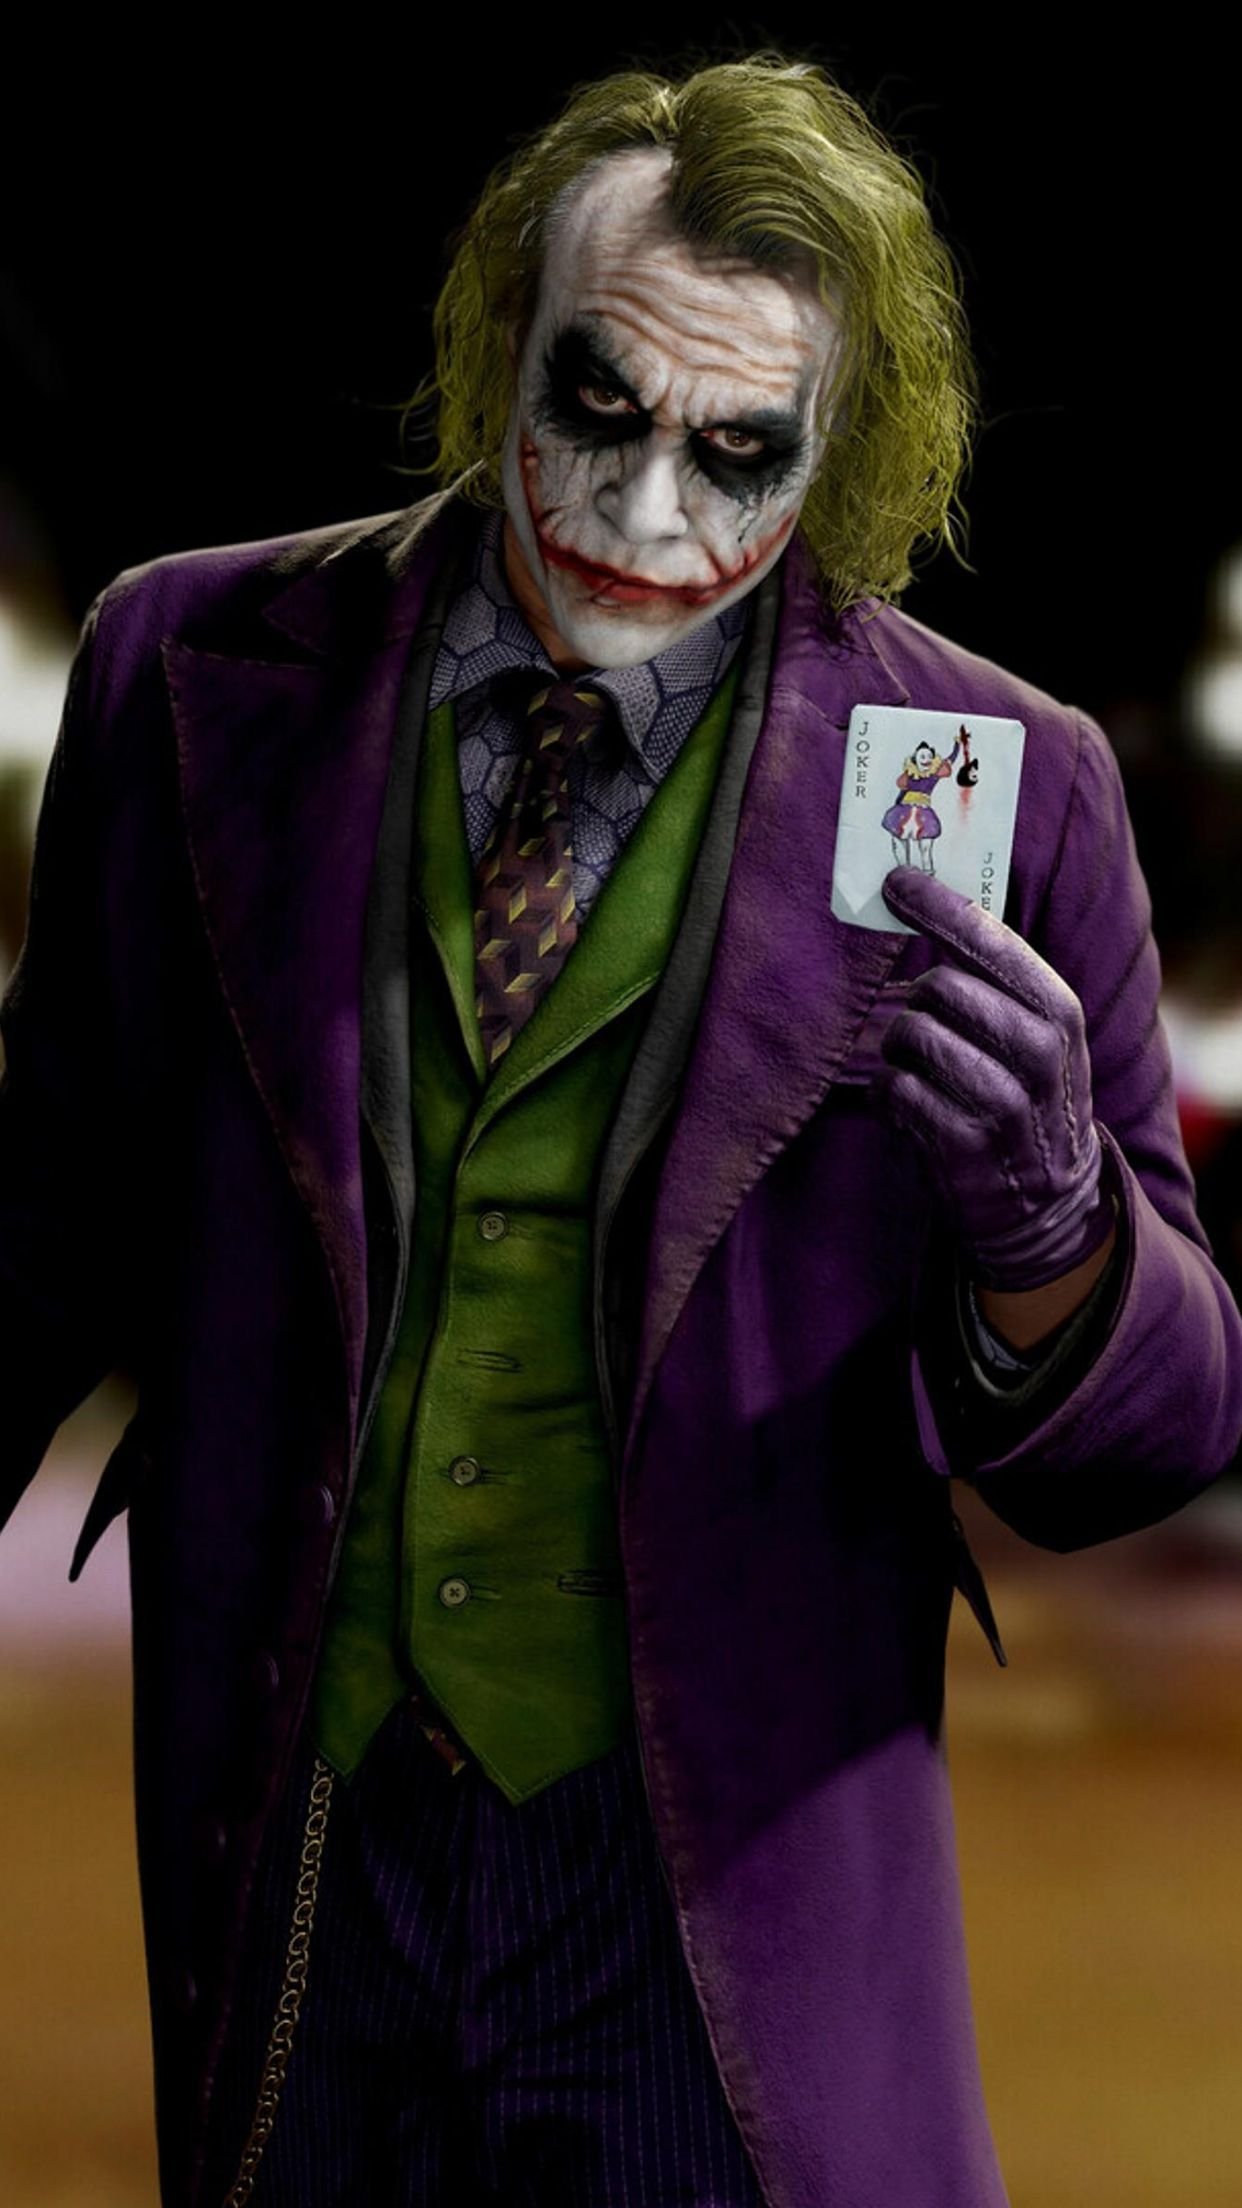 Joker Bad Boy Wallpaper Download | MobCup